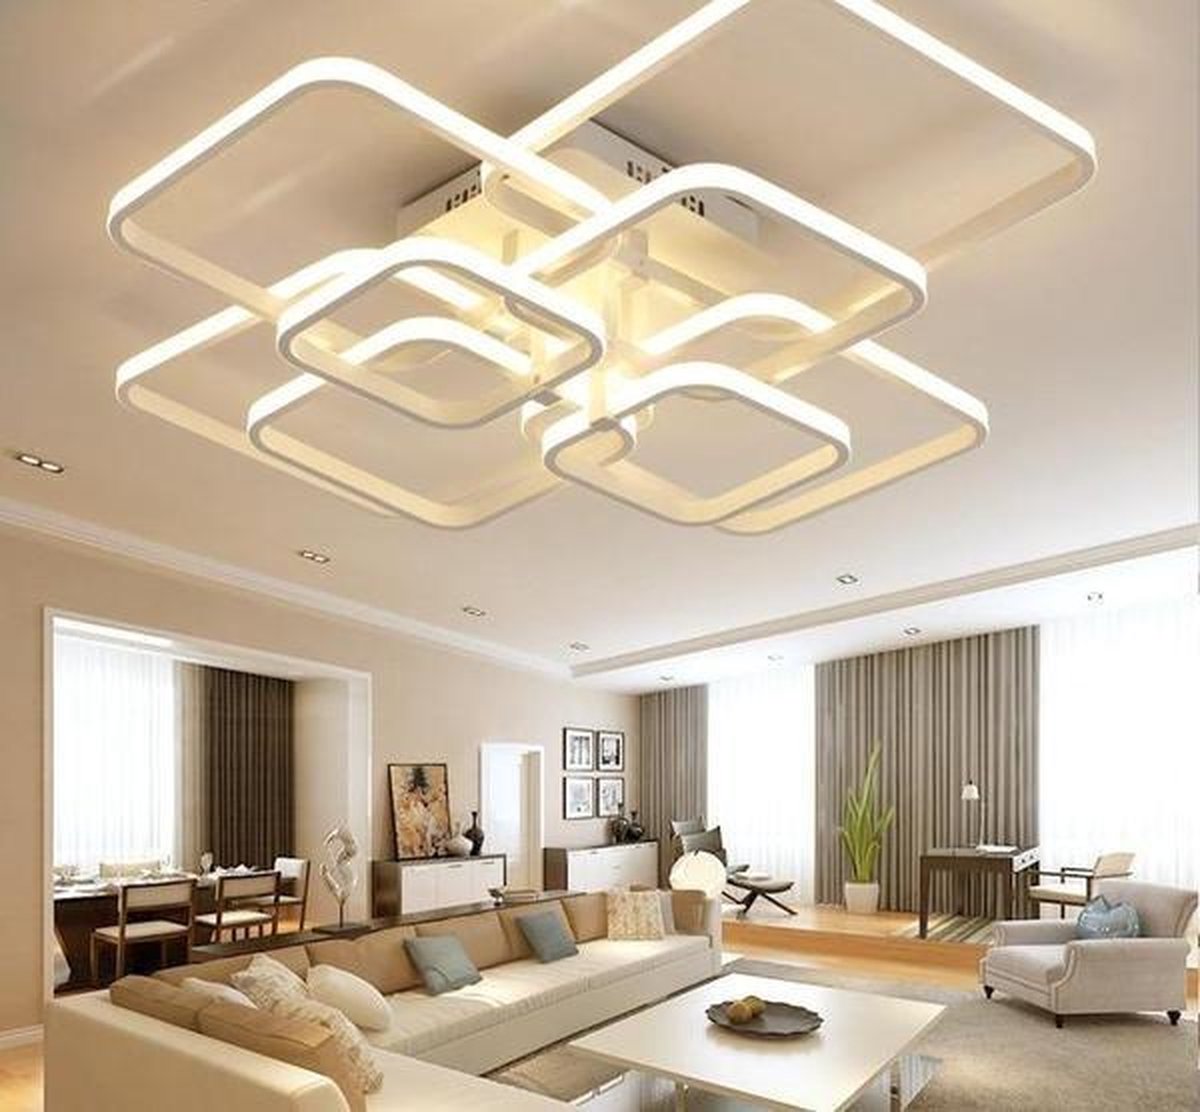 bol.com | Moderne LED kroonluchter - Sfeermakende ring lamp - Luxe  plafondlamp voor in de kamer...